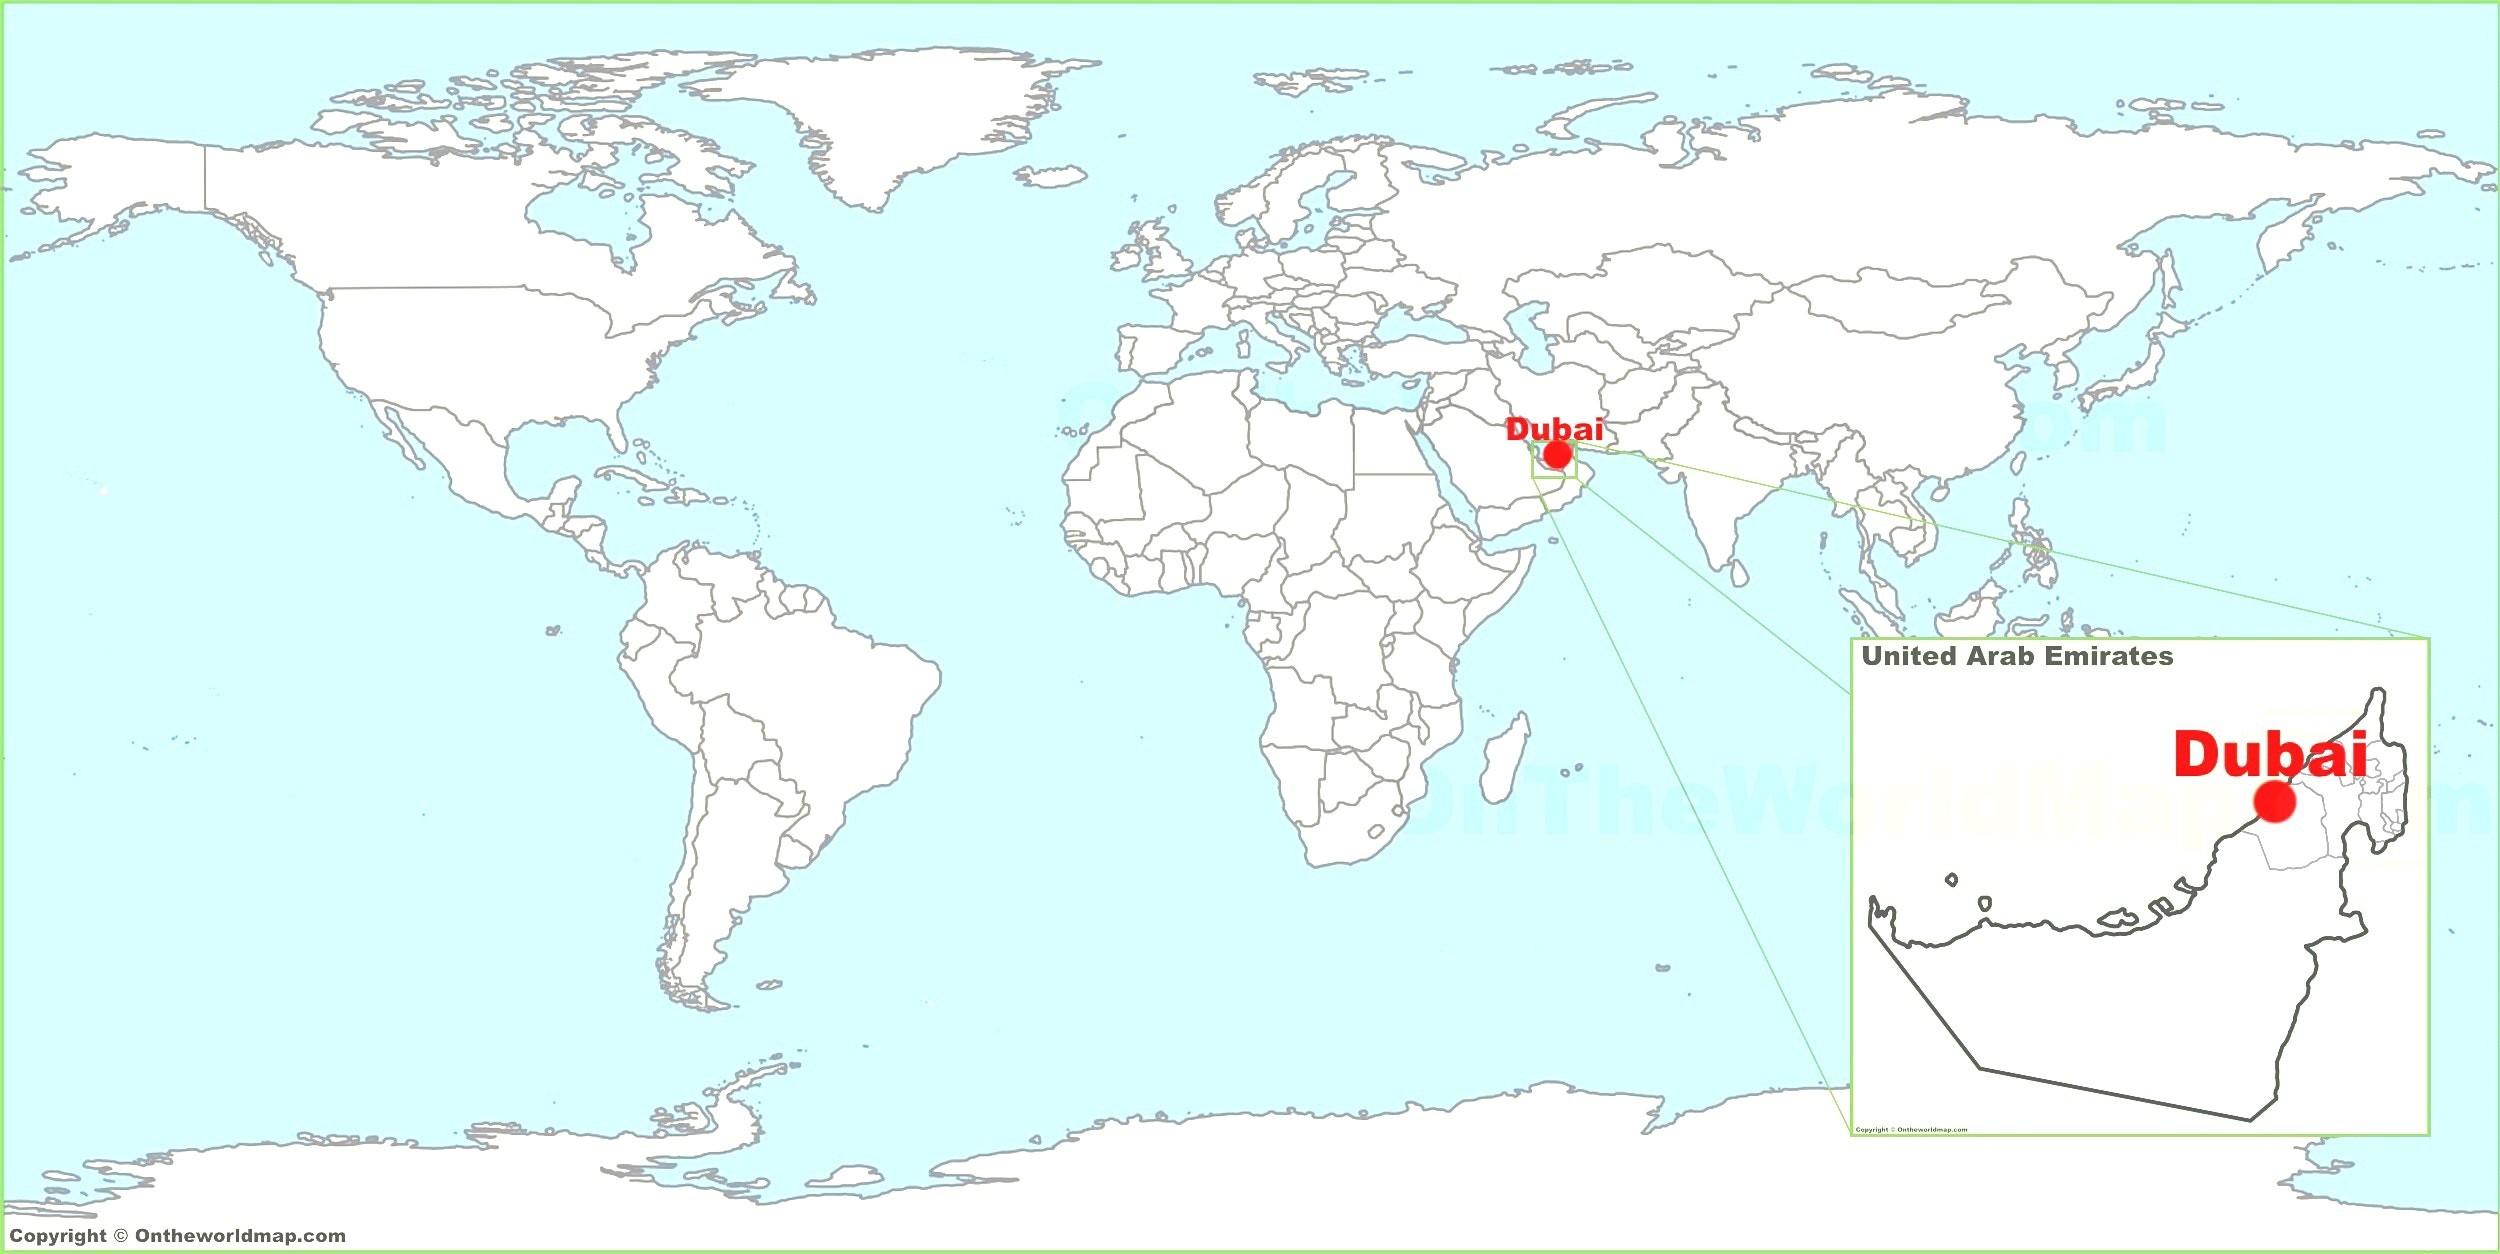 أفضلية سناك ماكينة تسجيل المدفوعات النقدية  دبي في خريطة العالم - خريطة دبي في العالم (الإمارات العربية المتحدة)